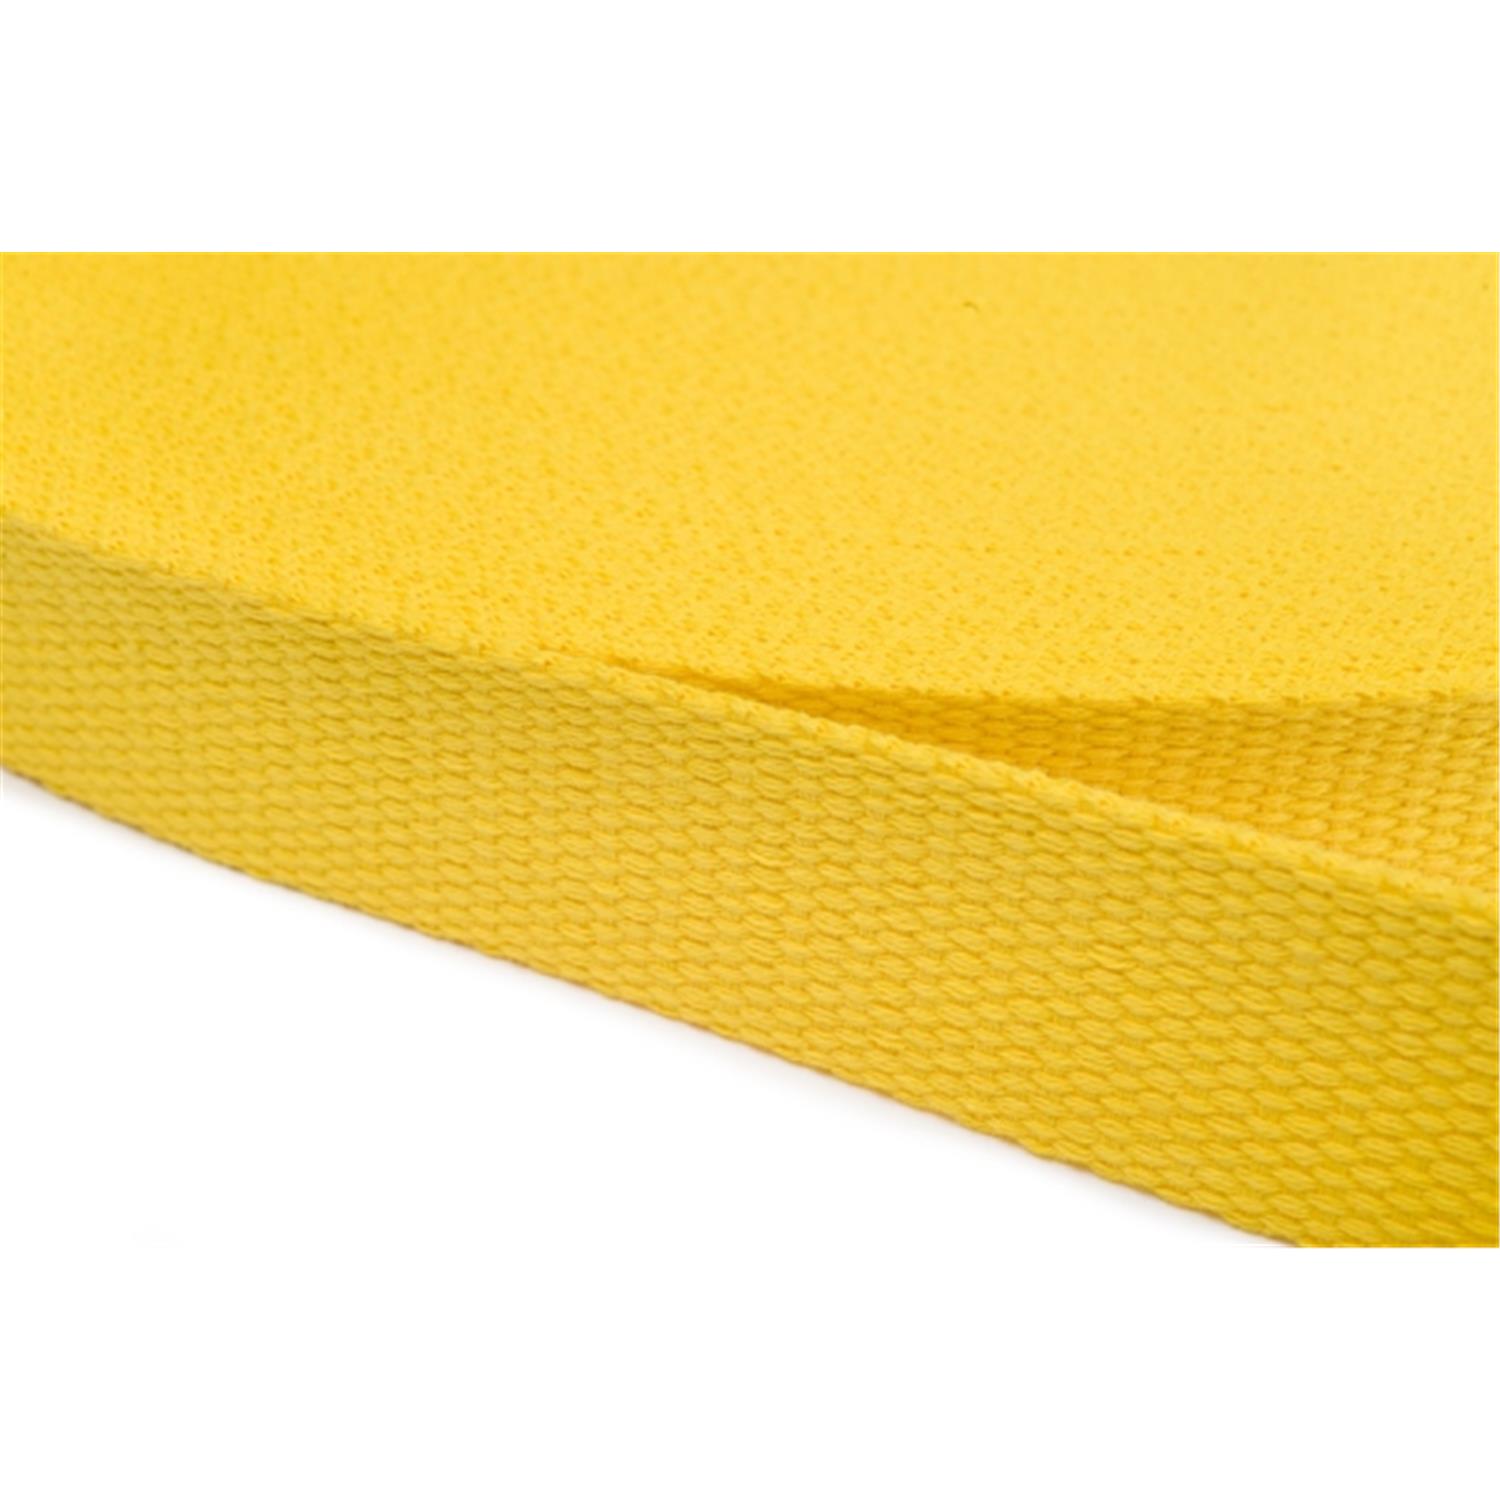 Gurtband aus Baumwolle 20mm in 20 Farben 05 - gelb 6 Meter